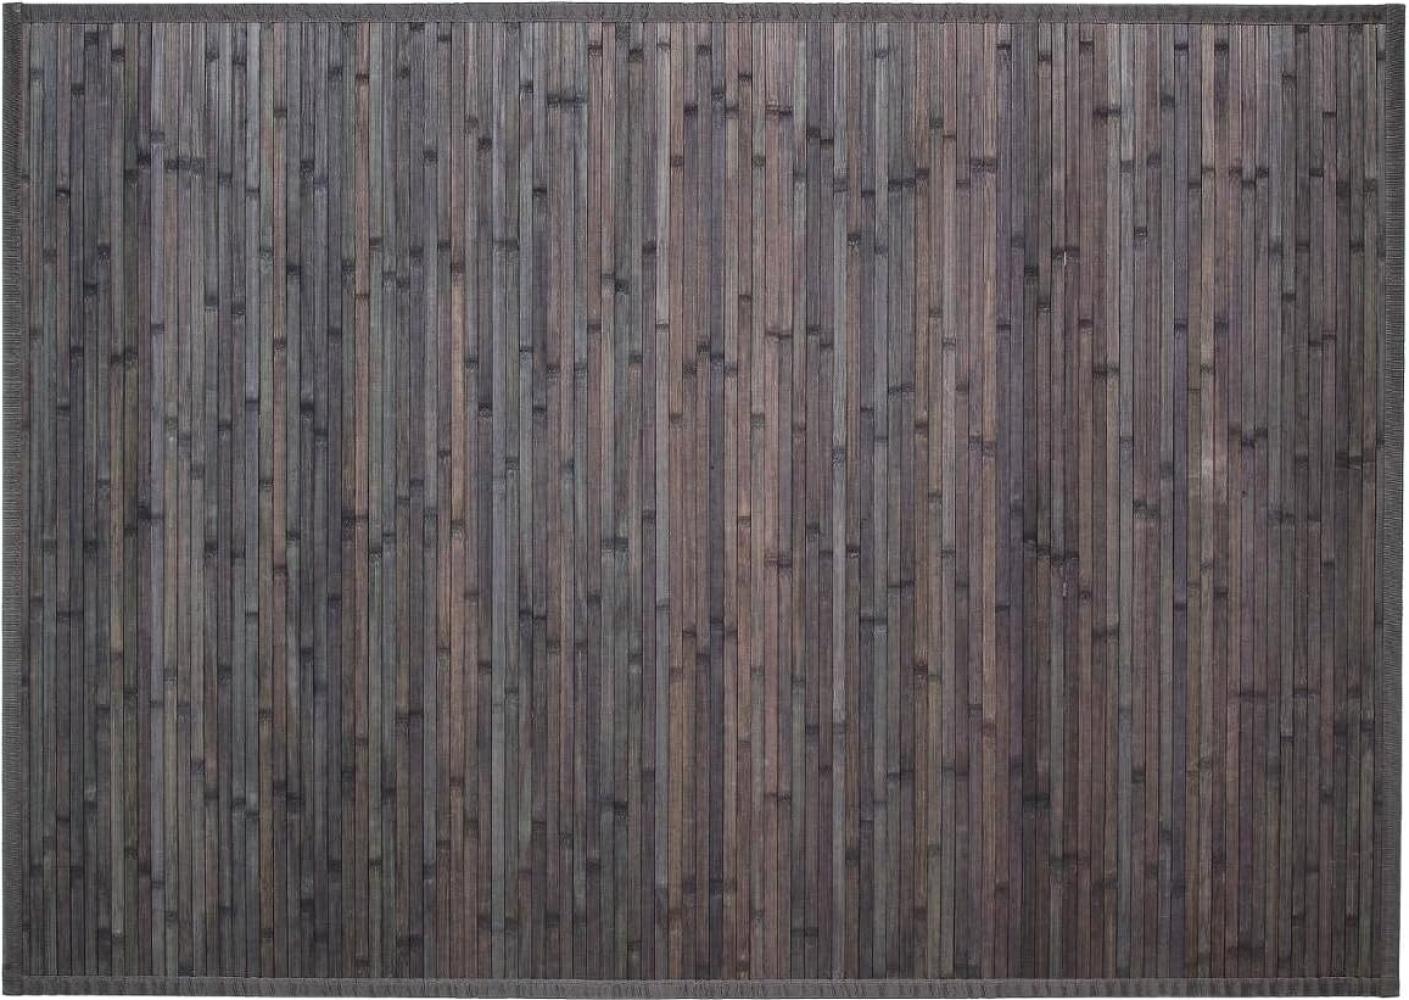 Badteppich aus Bambus, Badläufer, 120 x 170 cm, braun Bild 1